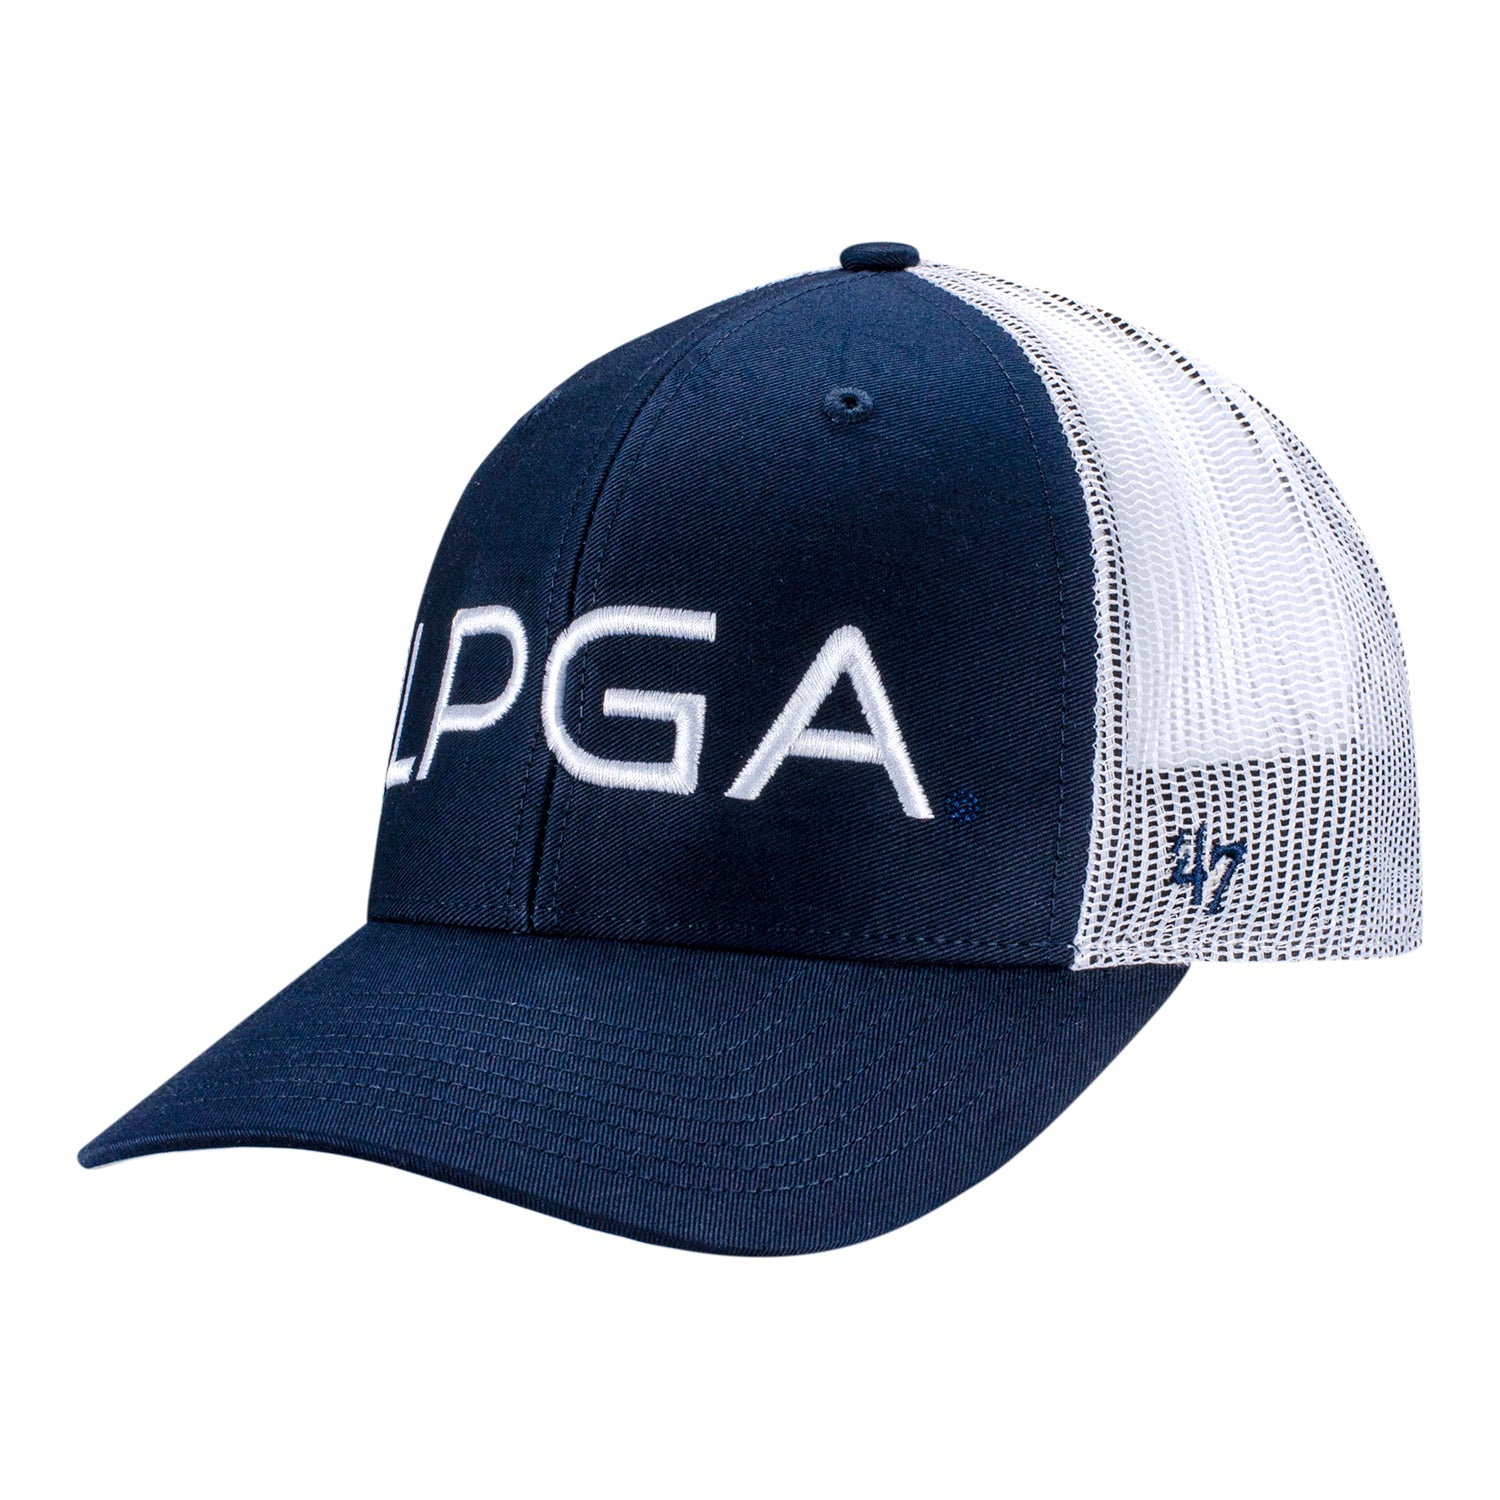 47 Brand LPGA Men's Trucker Hat W/ Mesh Back in Navy - Angled Left Side View